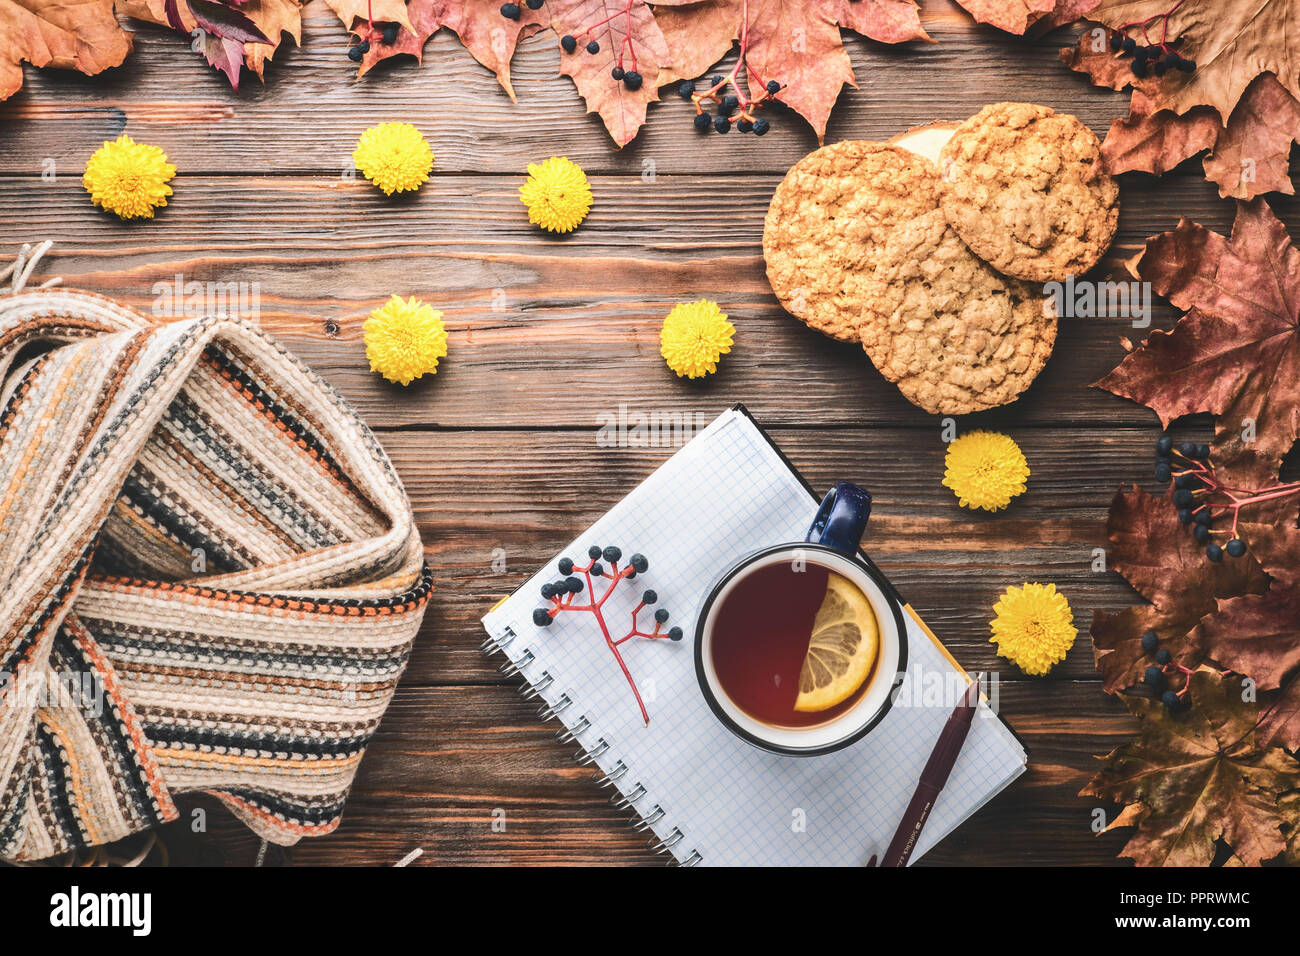 Herbst Mode saisonale Konzept skandinavischen Strickschal Tasse heißer schwarzer Tee, Kaffee, hausgemachten Haferflocken Cookies Fallen gefallen Ahornblätter auf hölzernen Tisch Stockfoto